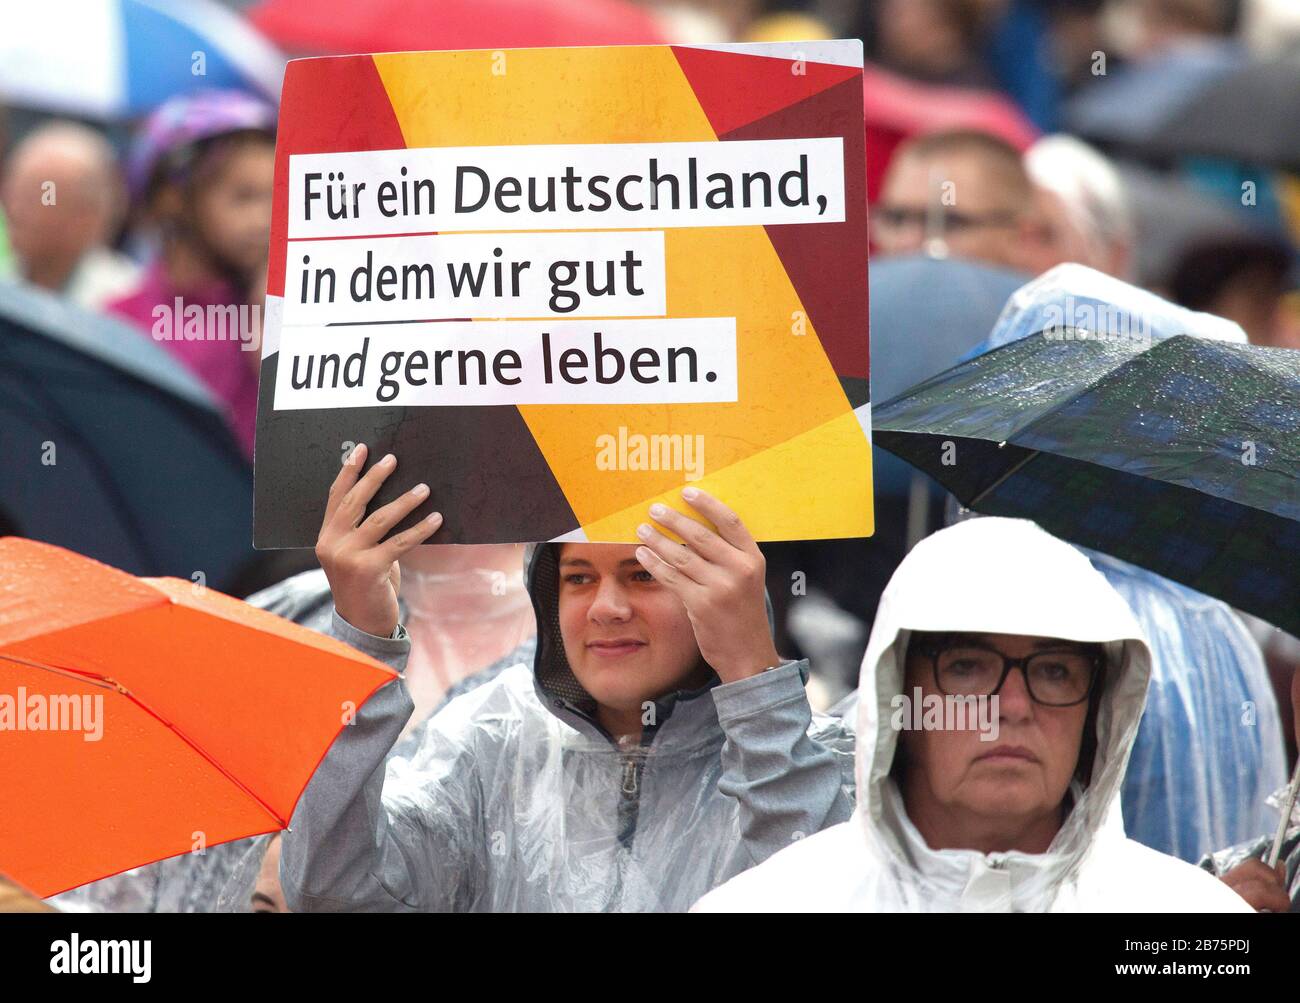 Ein CDU-Befürworter hält am 6. September 2017 in Torgau während der Rede von Kanzlerin Angela Merkel ein Plakat mit der Aufschrift "für ein Deutschland, in dem wir gut und gerne leben". Die Wahl zum 19. Deutschen Bundestag findet am 24. September 2017 statt. [Automatisierte Übersetzung] Stockfoto